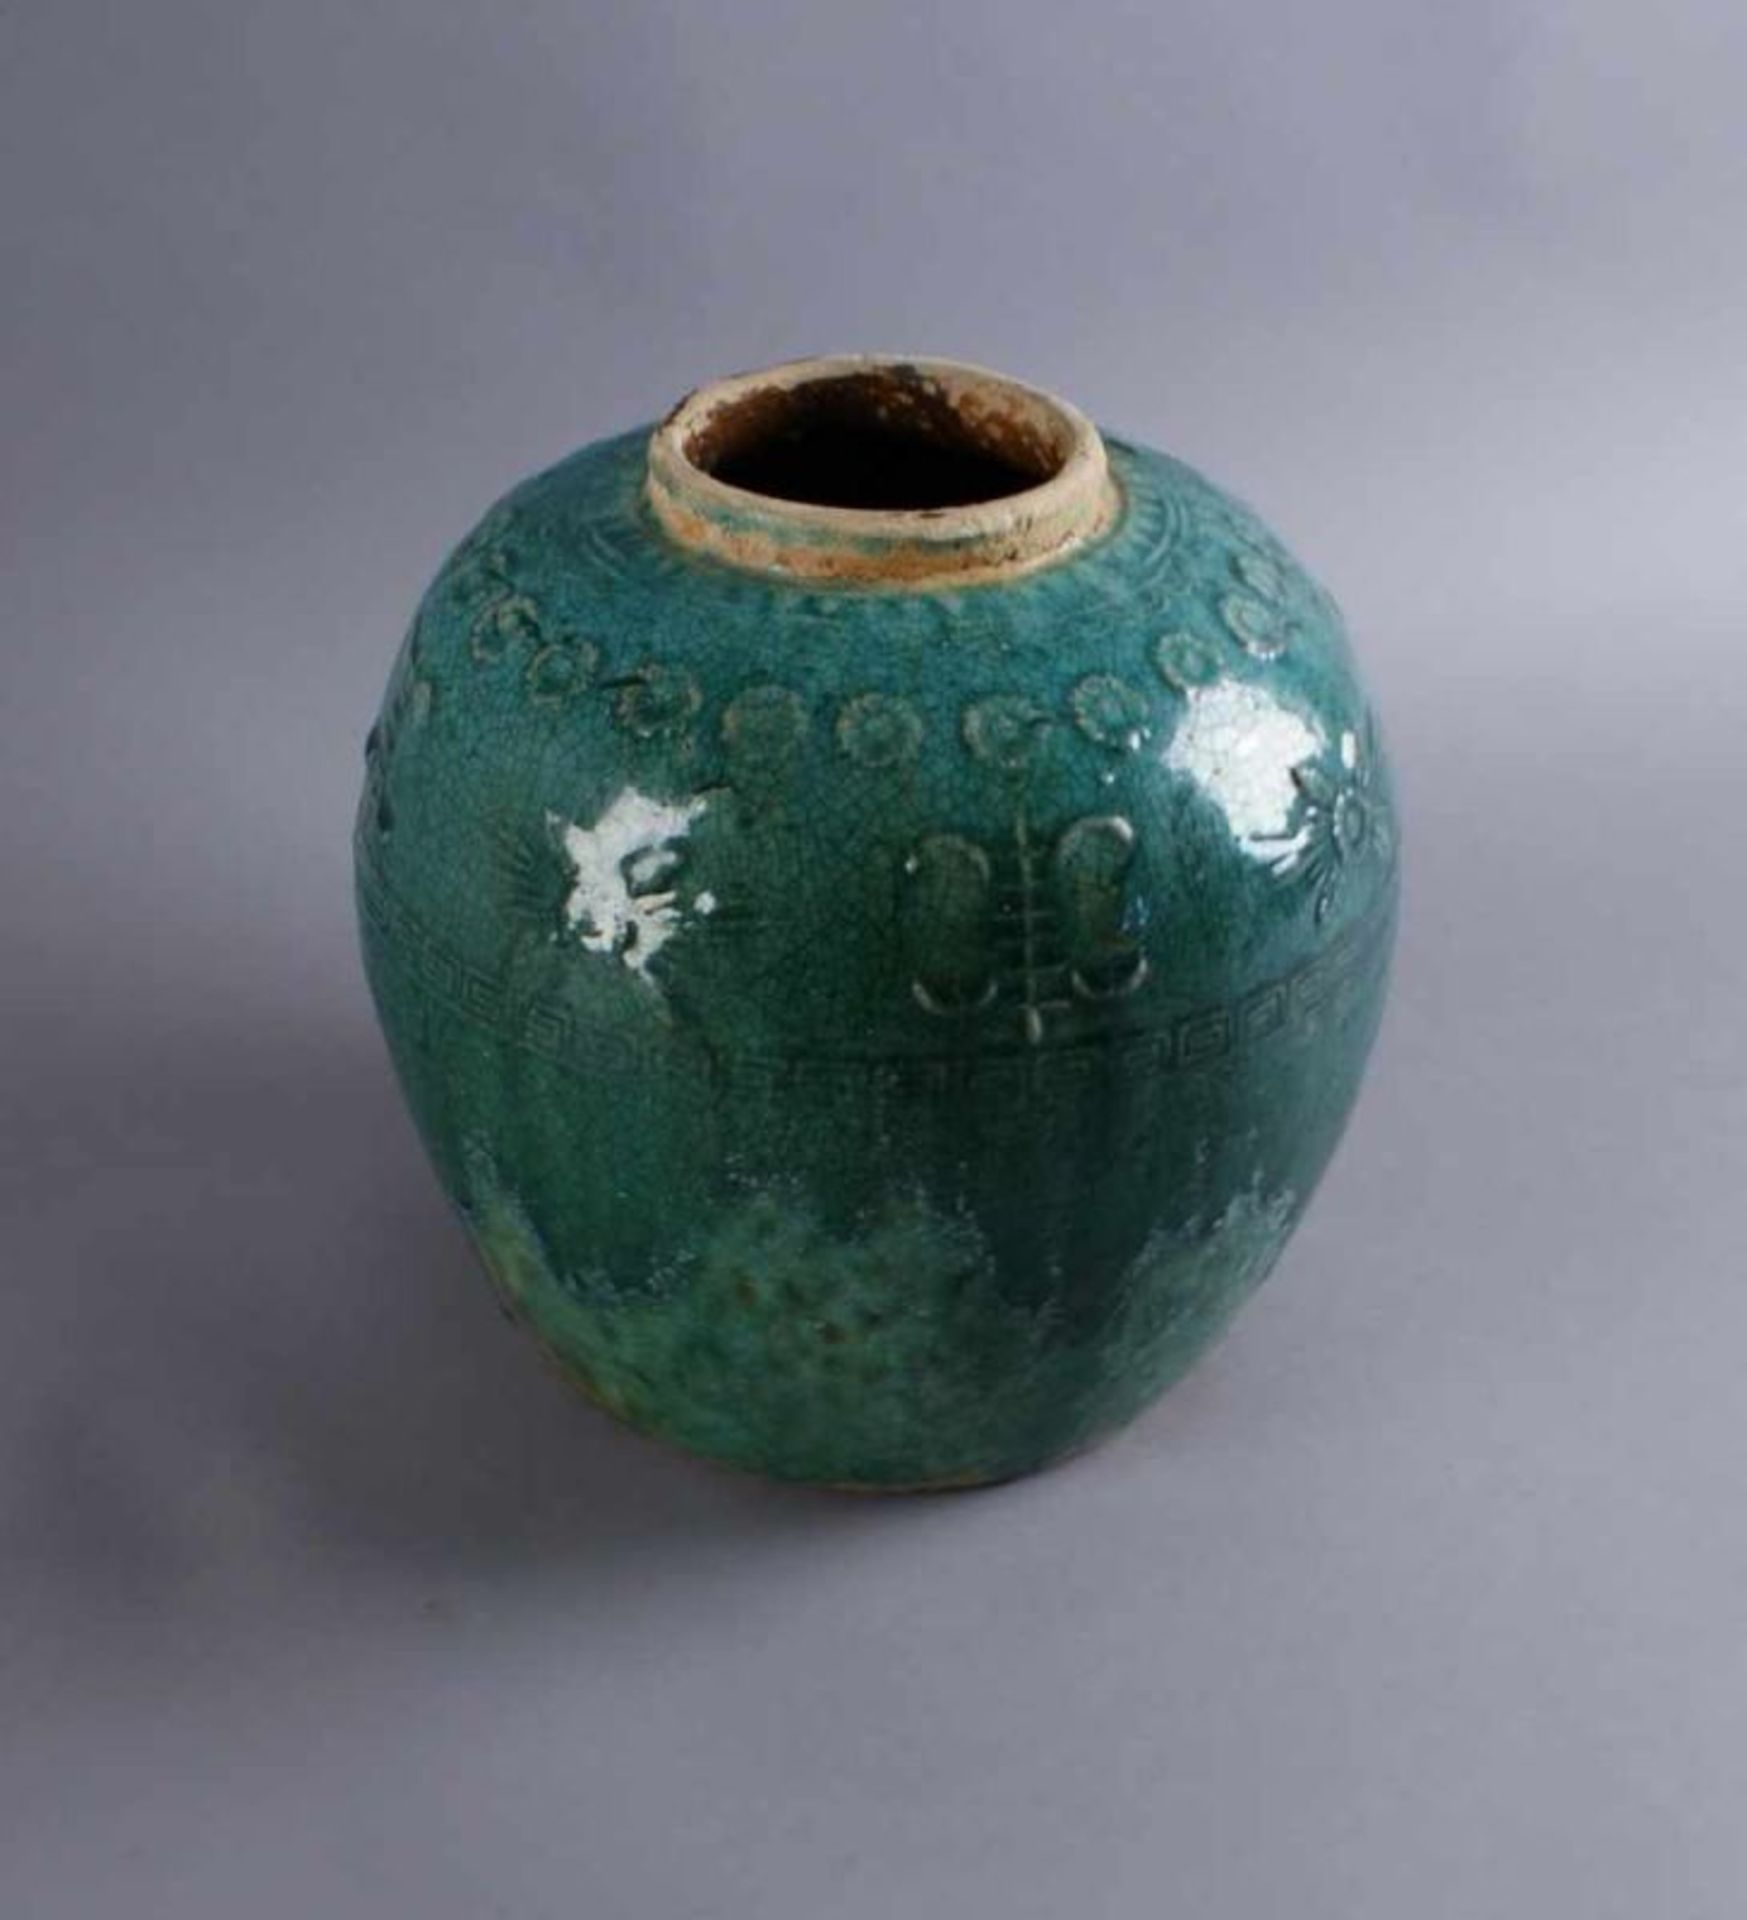 BLUMENVASE China, wohl 17. JH., bauchige Tonvase, grün glasiert, H 22 cm Durchmesser 21 cm 20.17 % - Bild 3 aus 5